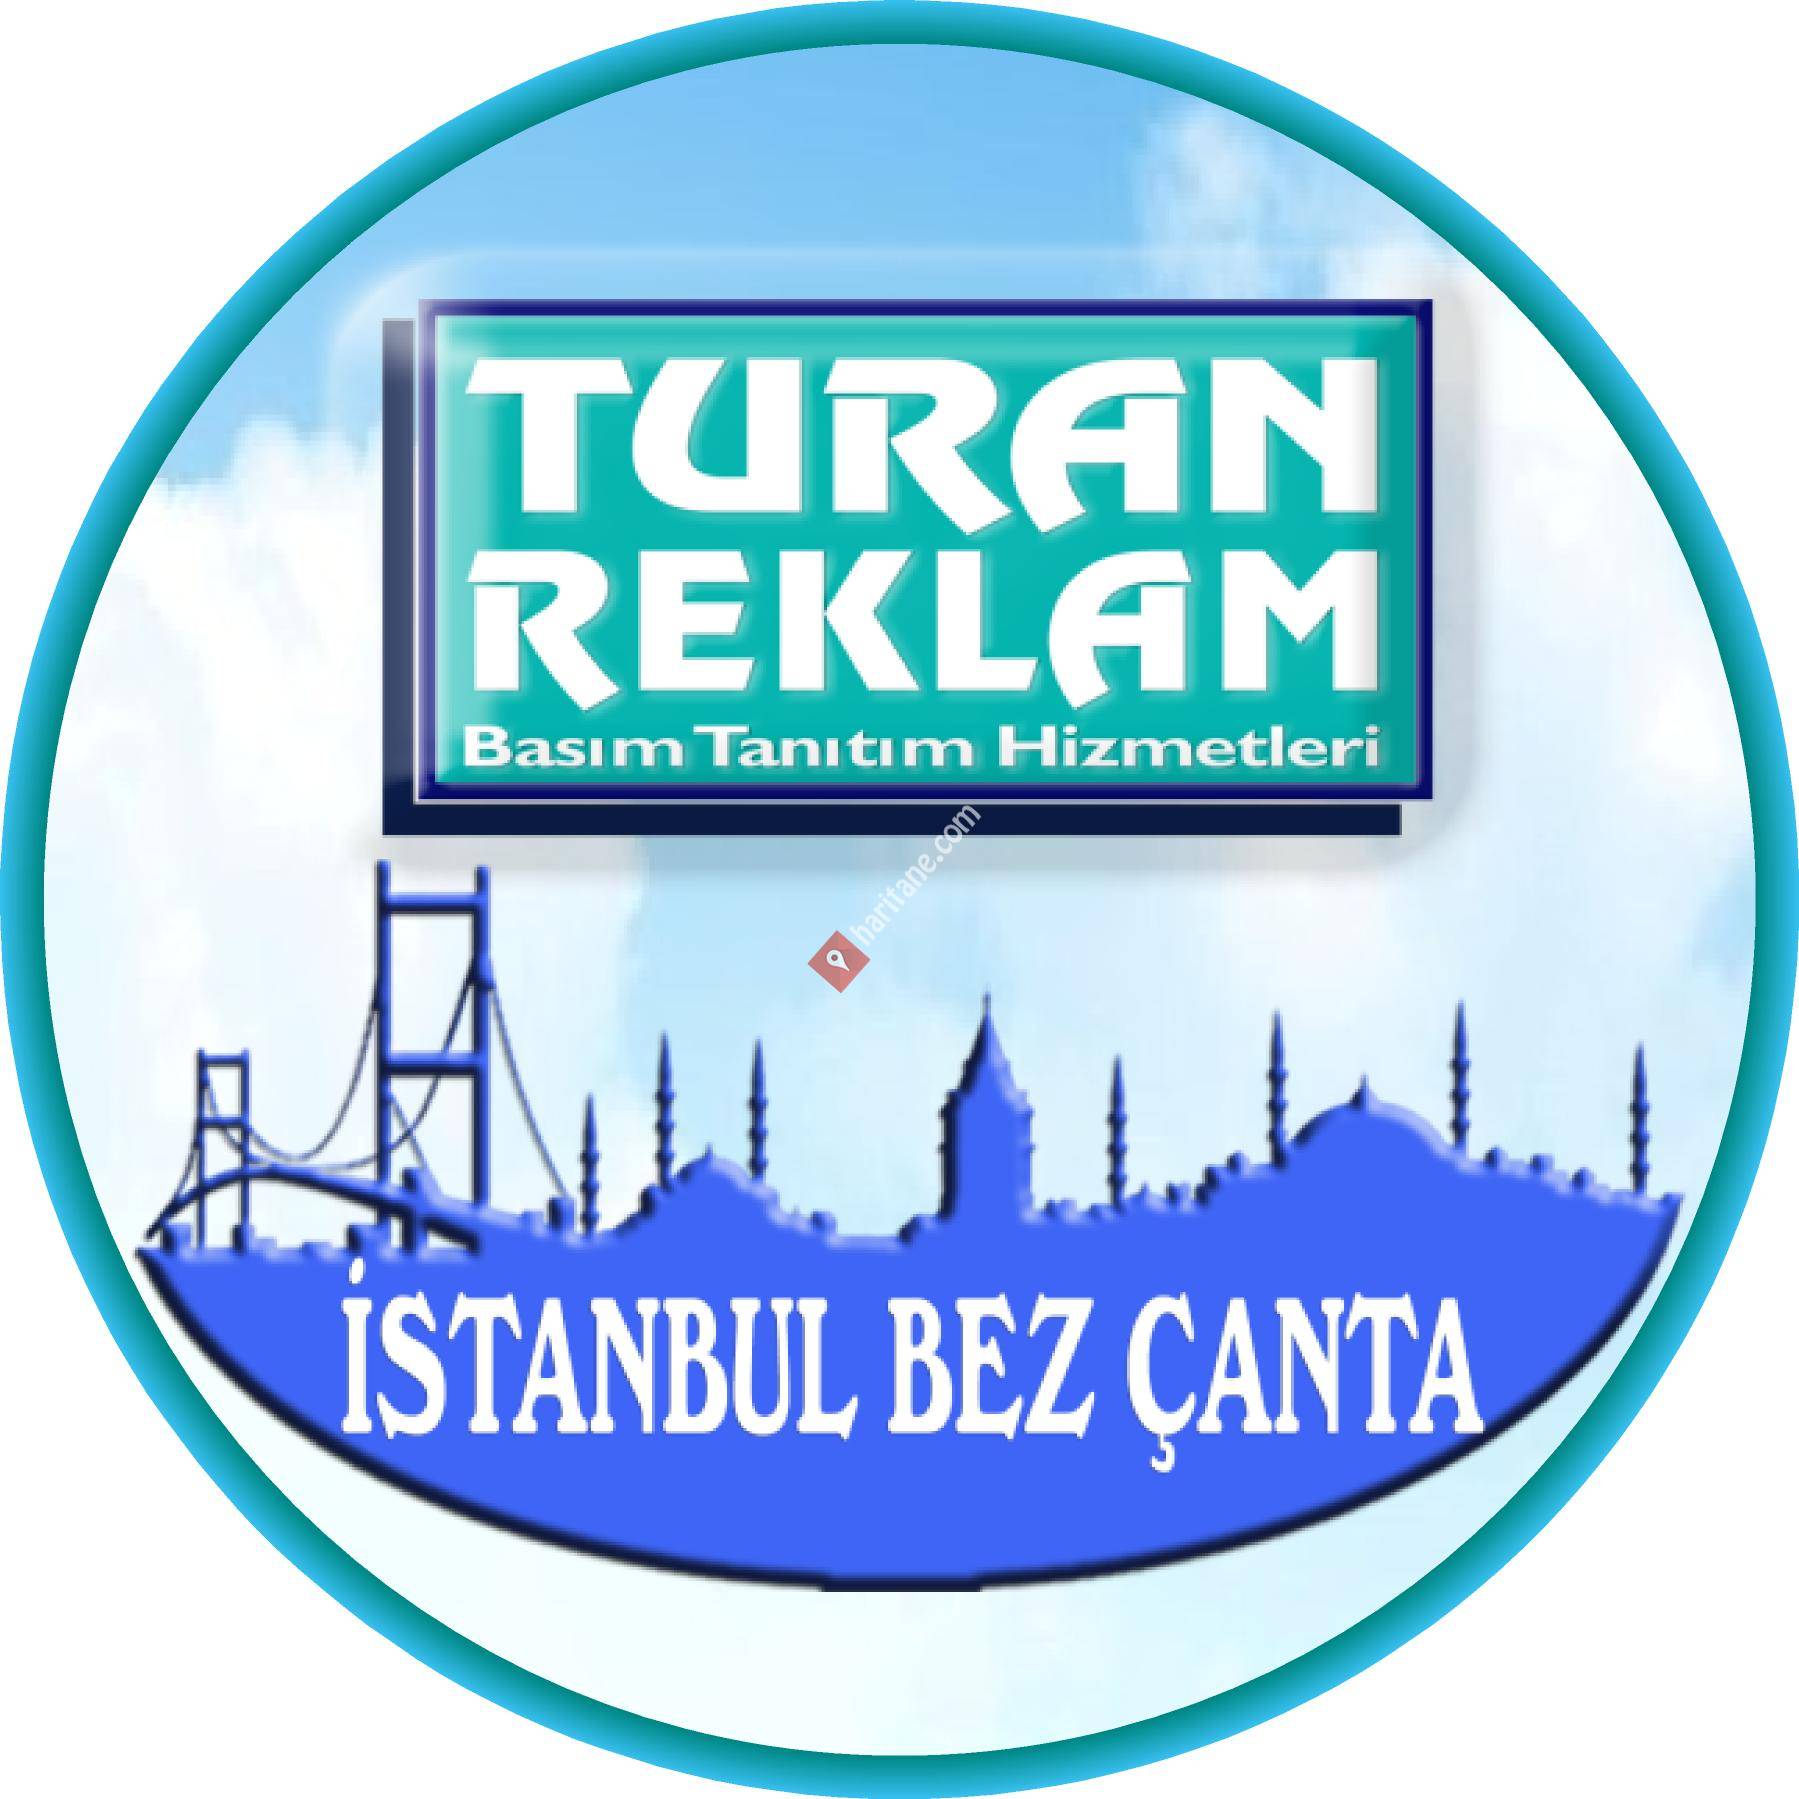 İstanbul Çanta ve Reklam Hizmetleri